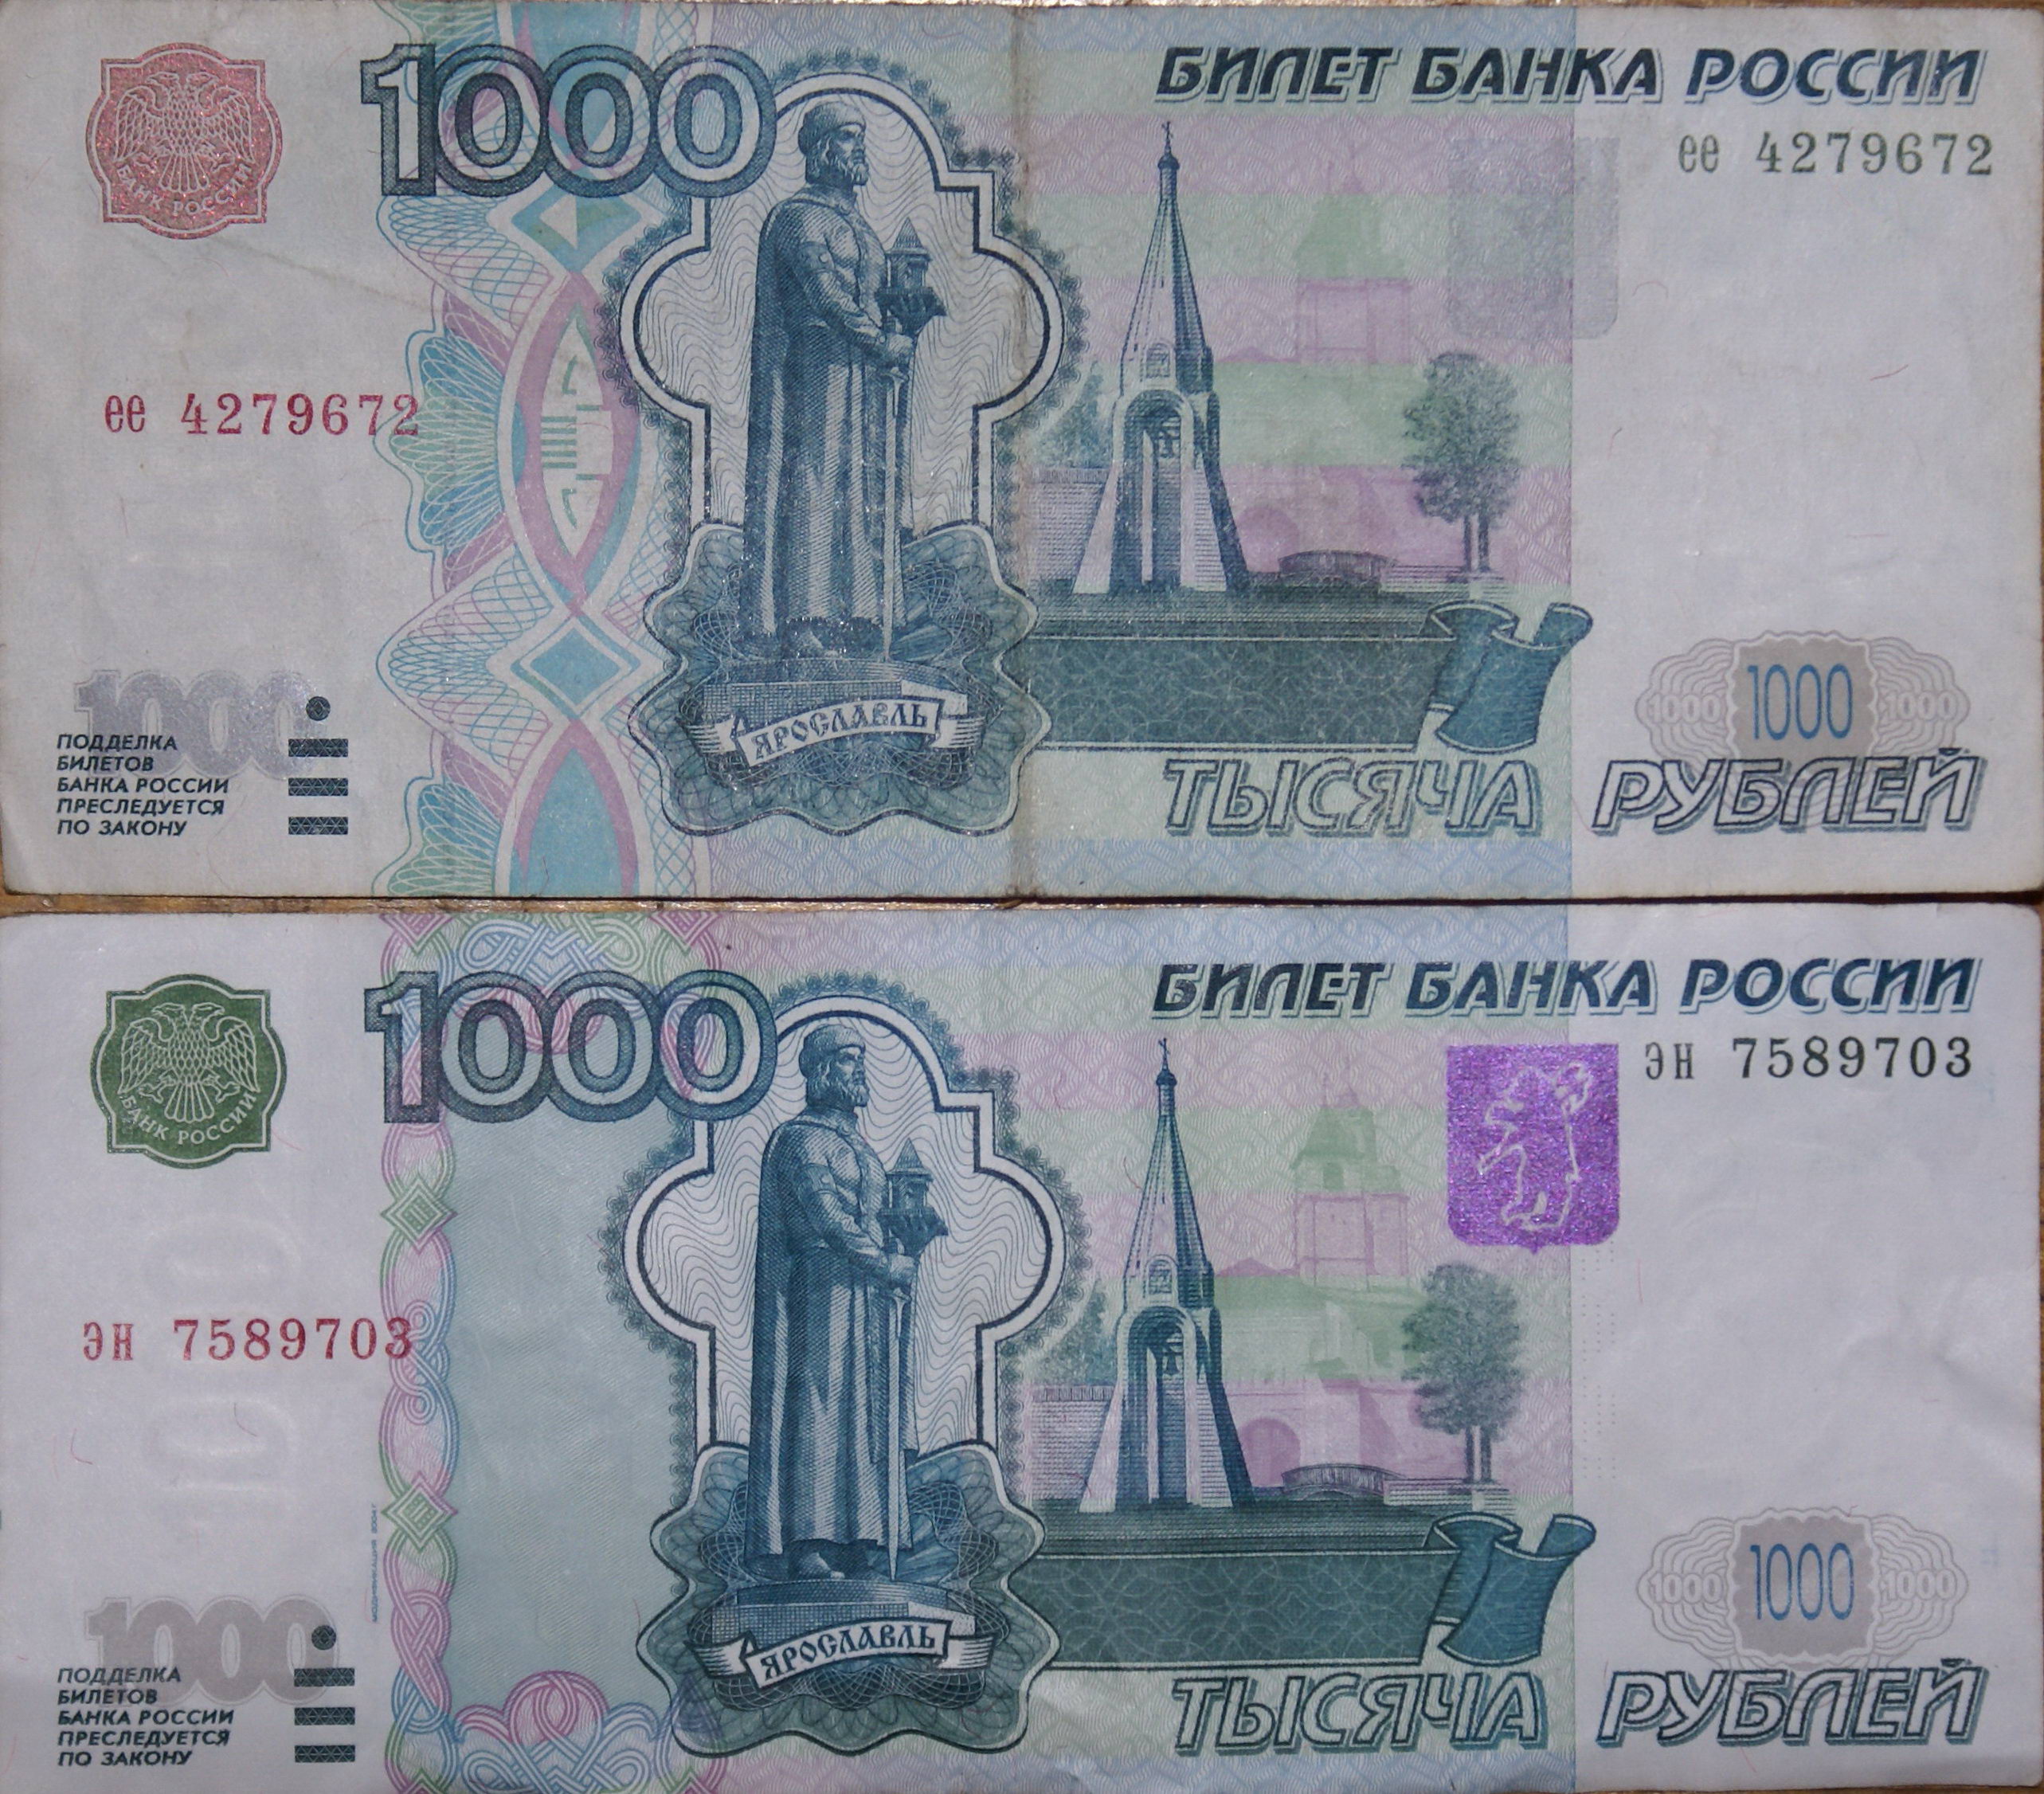 1000 рублей плюс 1000 рублей. Тысячная купюра 1997 года. Купюра 1000 р 1997 года. Купюра 1000 рублей старого образца 1997. 1000 Купюра 1997 года старого образца.